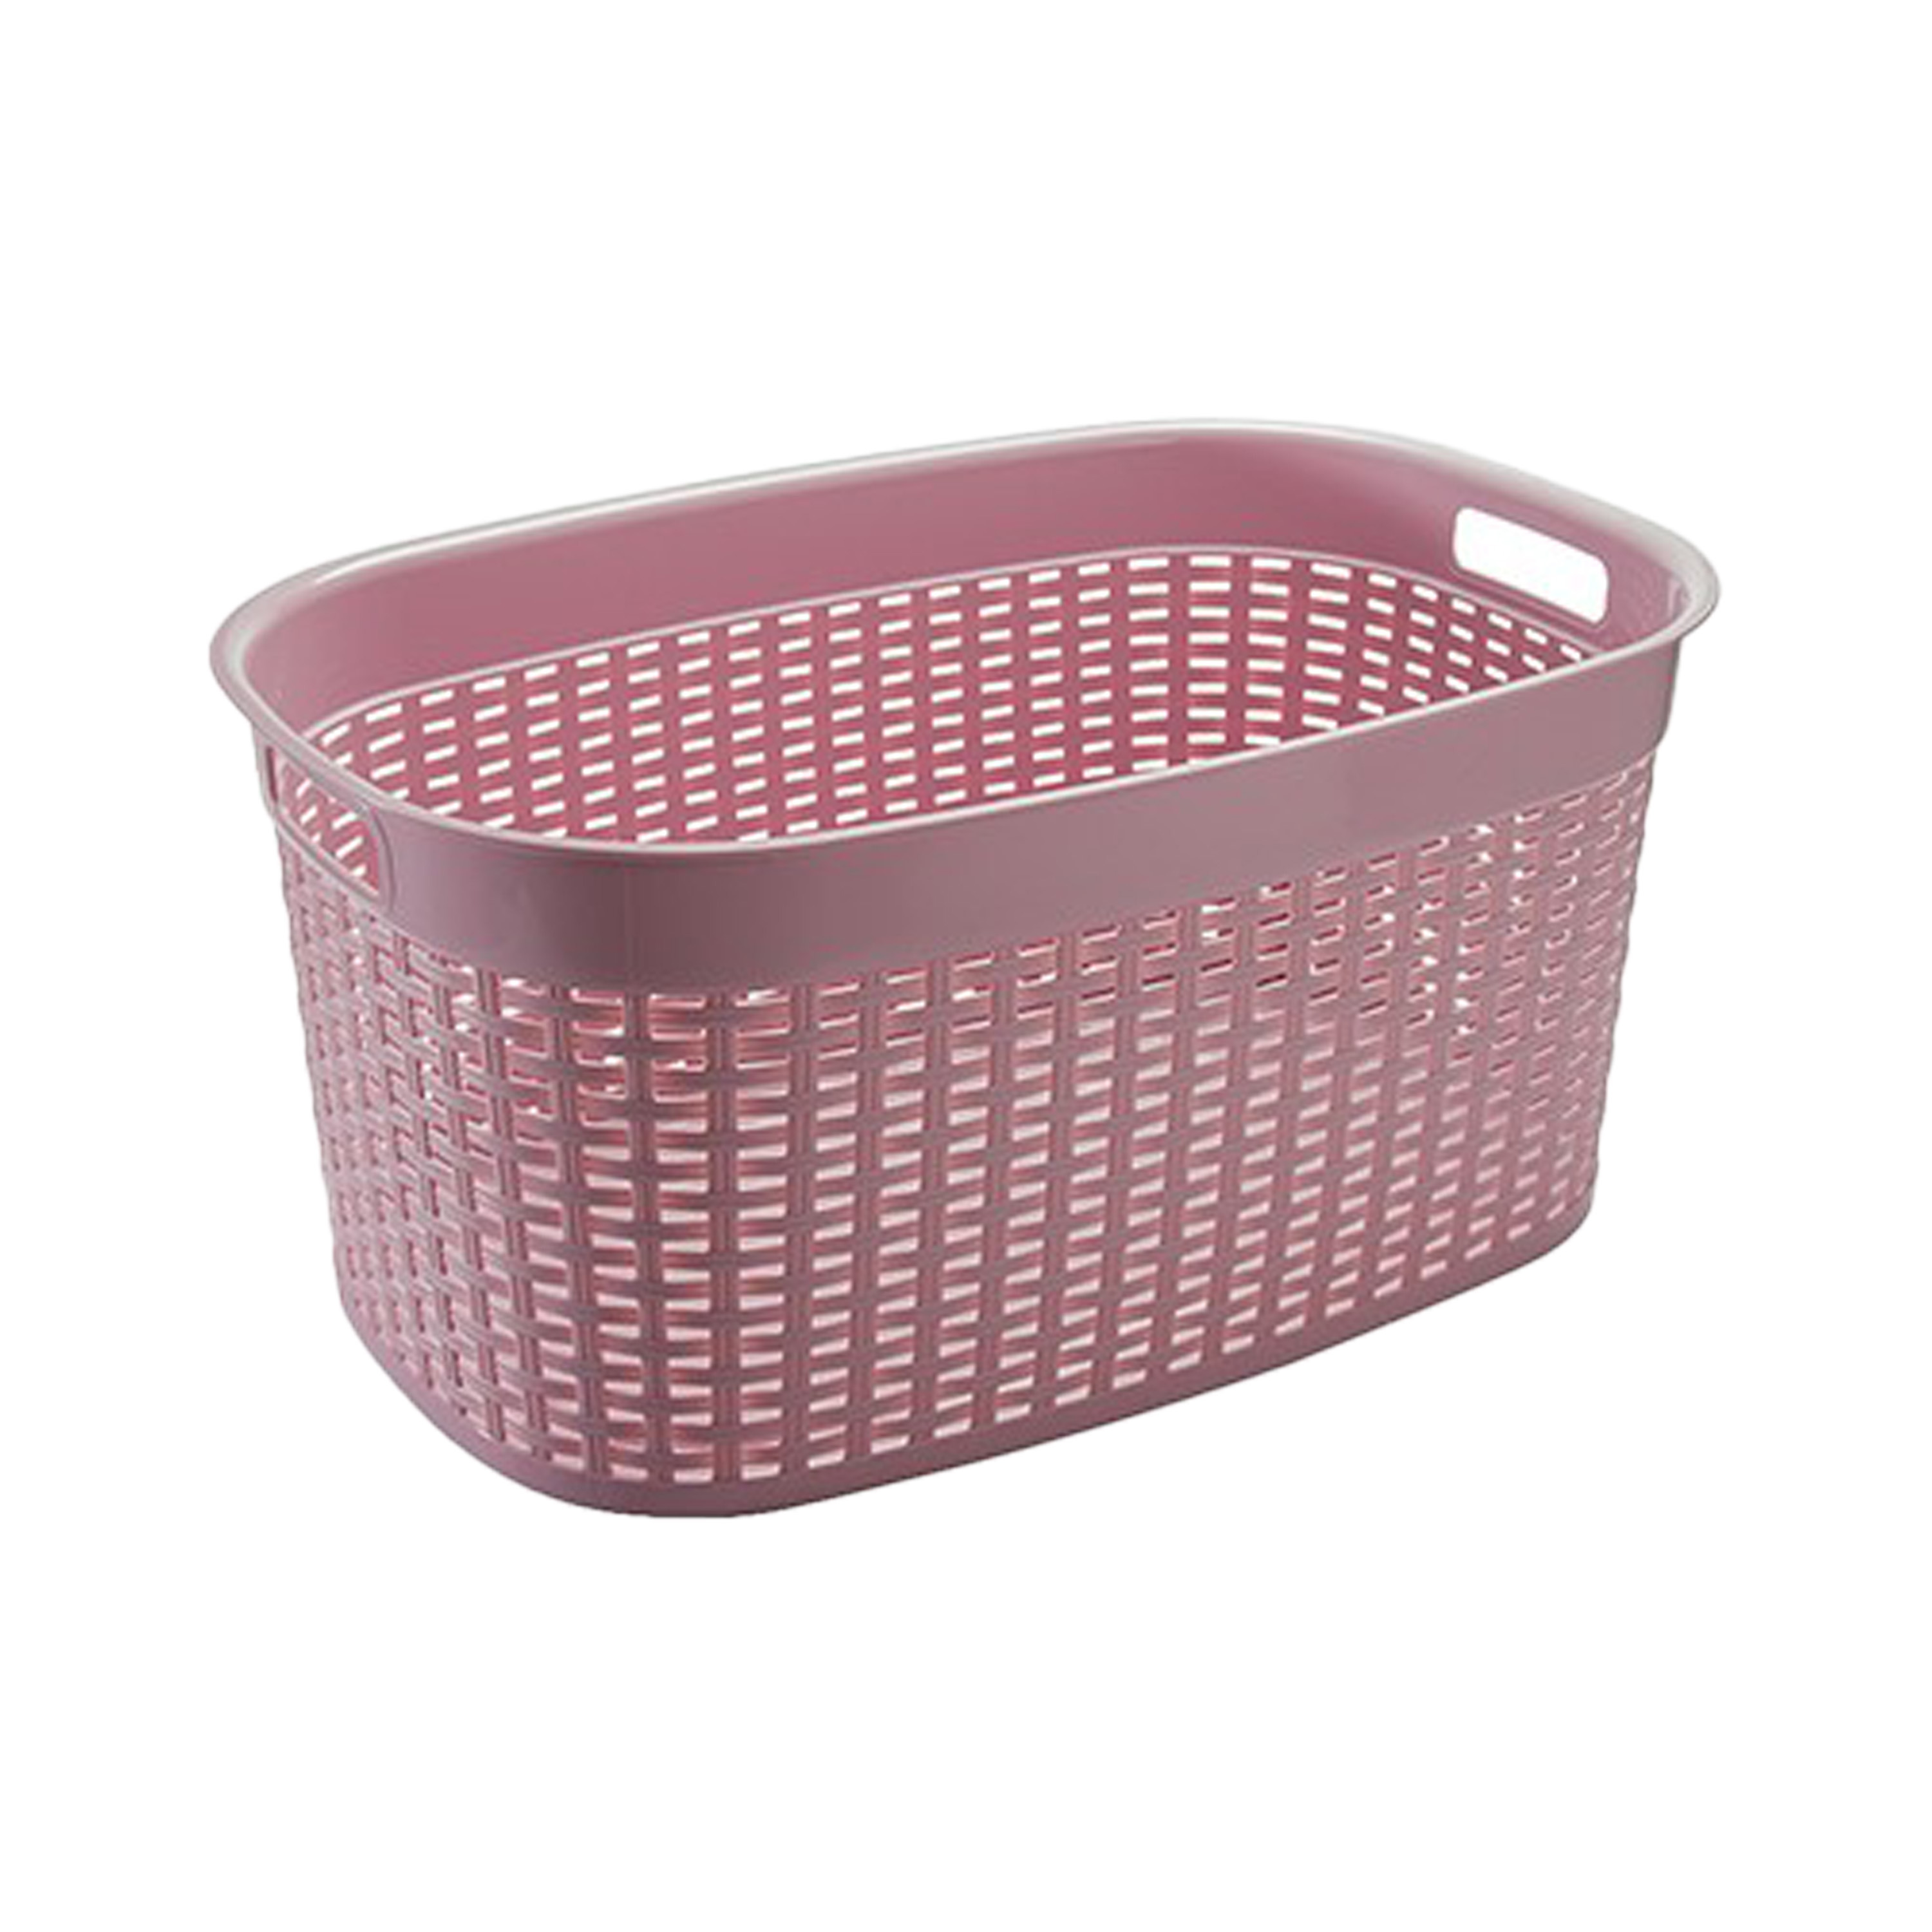 Rotan line wasmand roze inhoud 44 liter kunststof 58 x 39 x 27 cm met handvatten